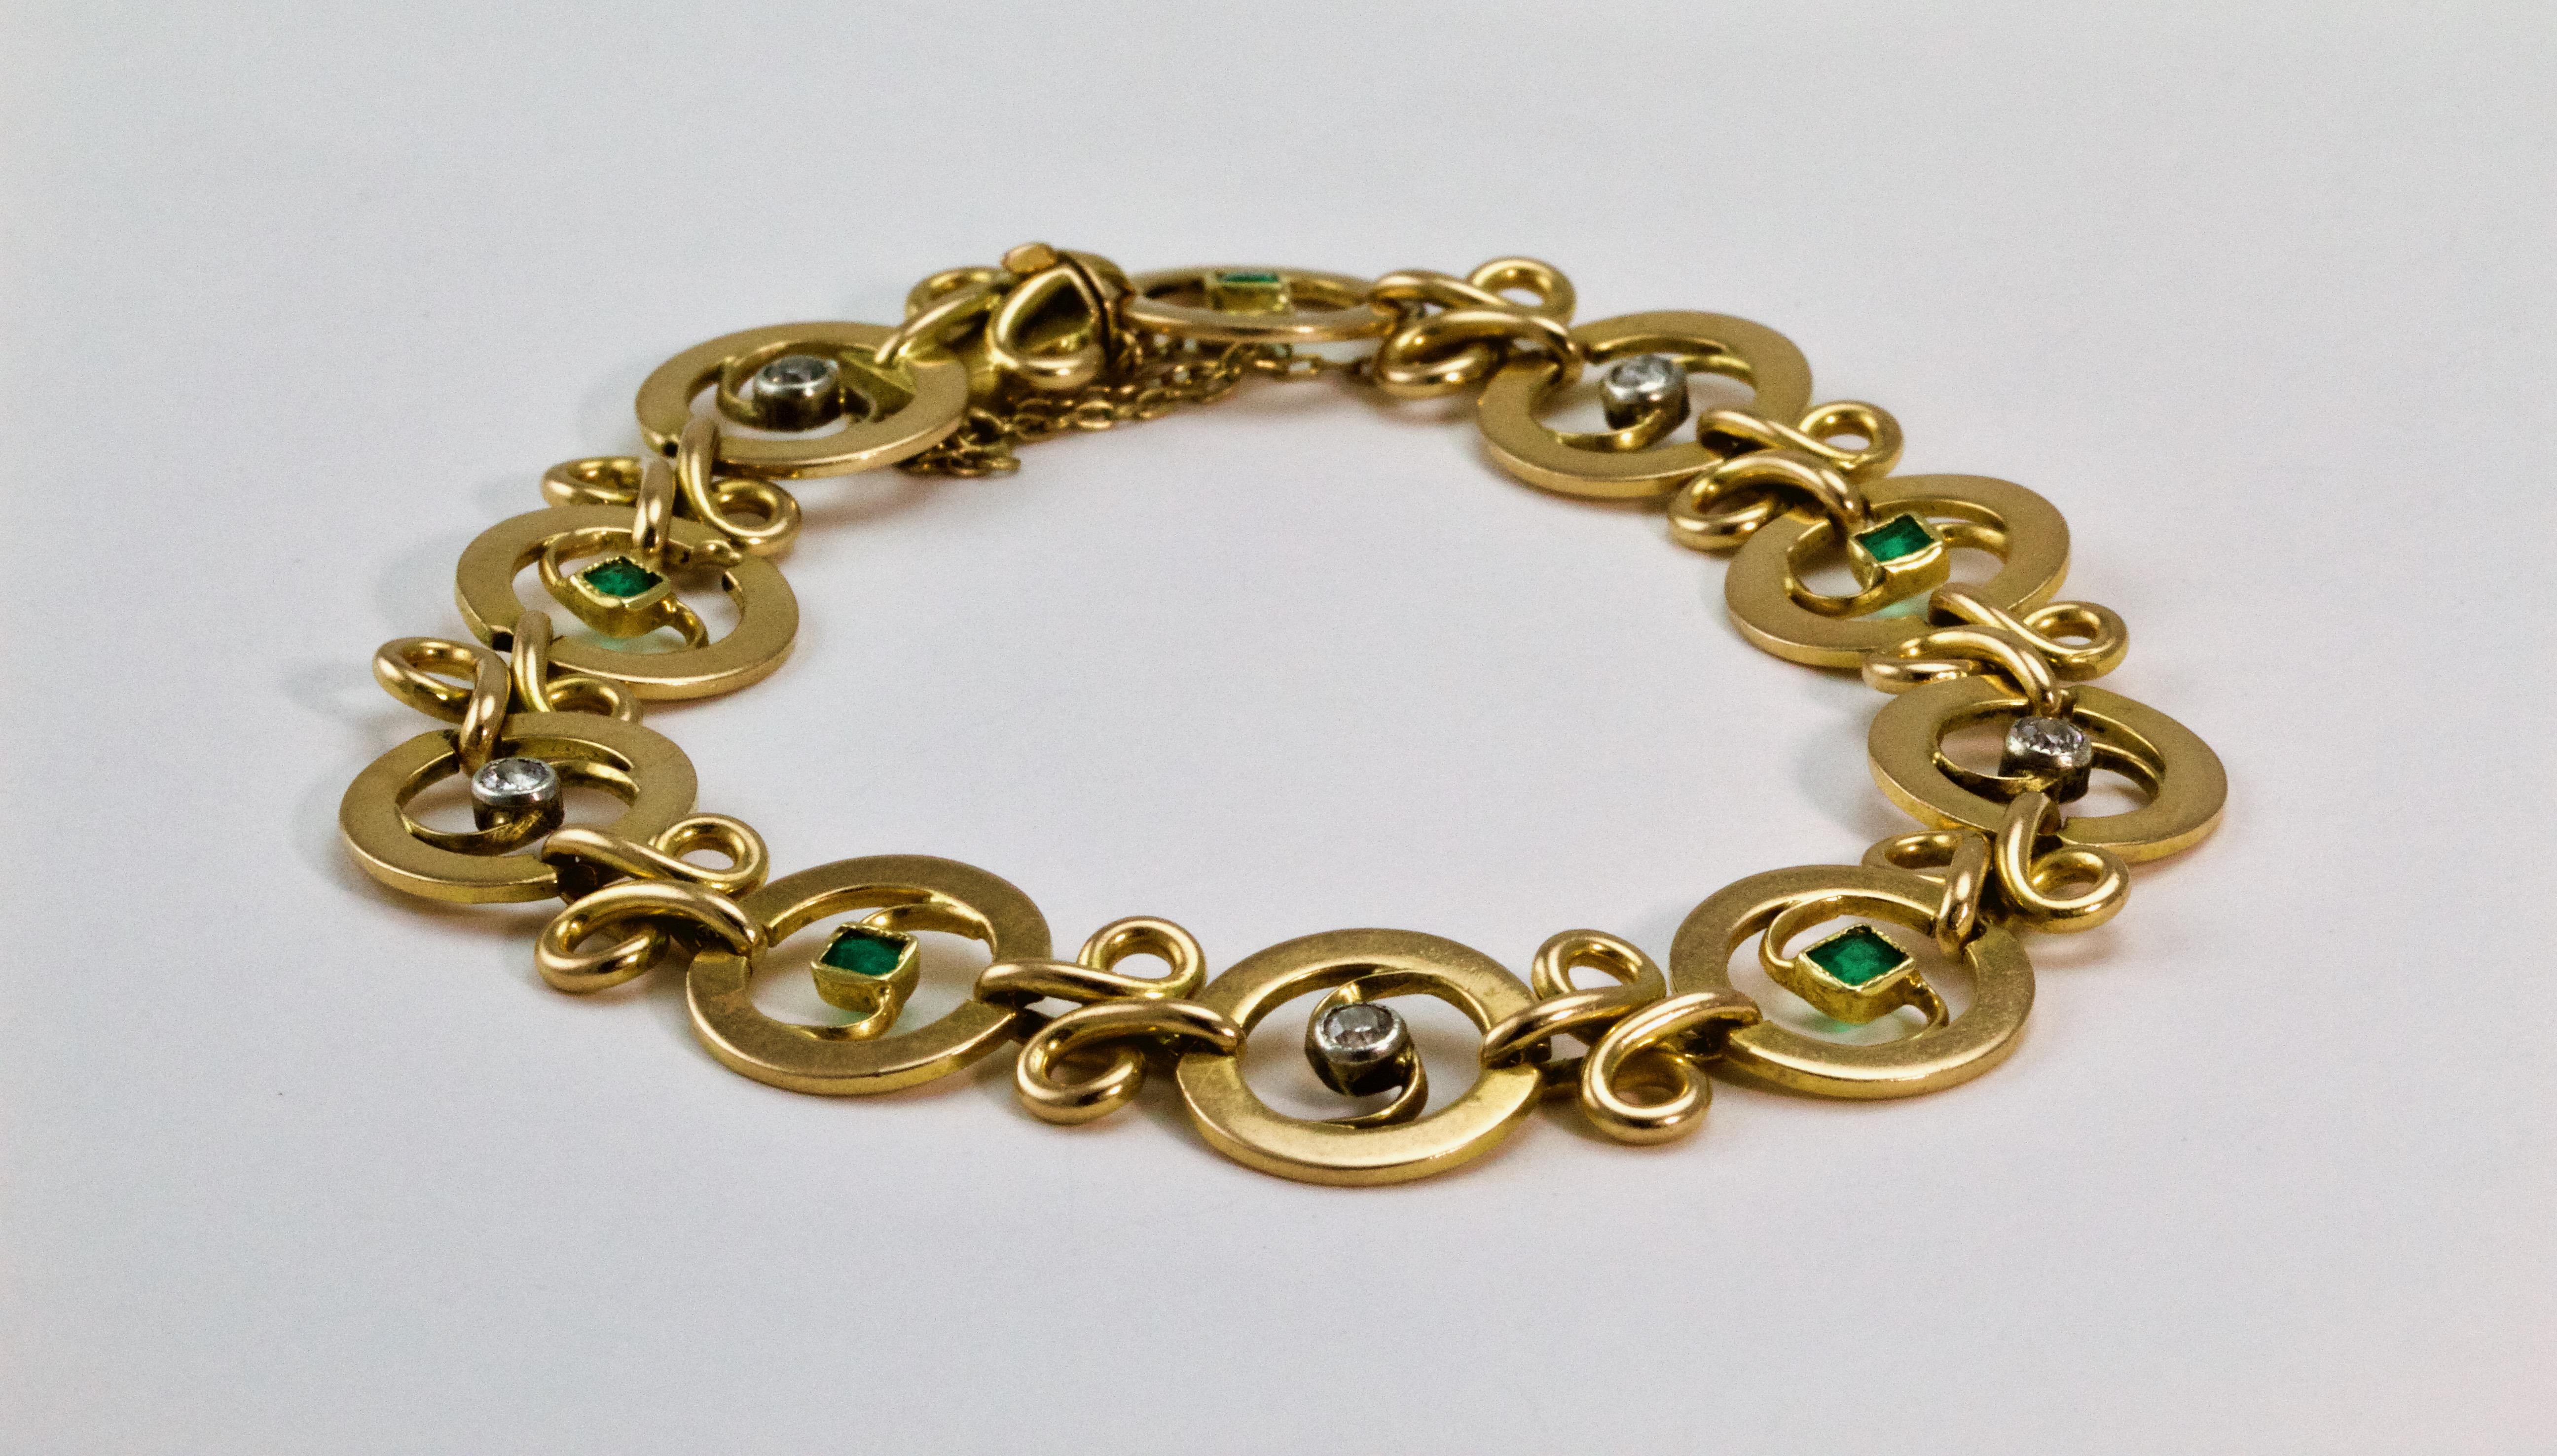 Französisches Jugendstil-Armband aus 18 Karat Gelbgold, um 1910. Dieses atemberaubende Armband besteht aus 10 durchbrochenen, kreisförmigen Gliedern, die abwechselnd mit Diamanten und Smaragden besetzt sind. Sie sind mit kleinen goldenen Bändern